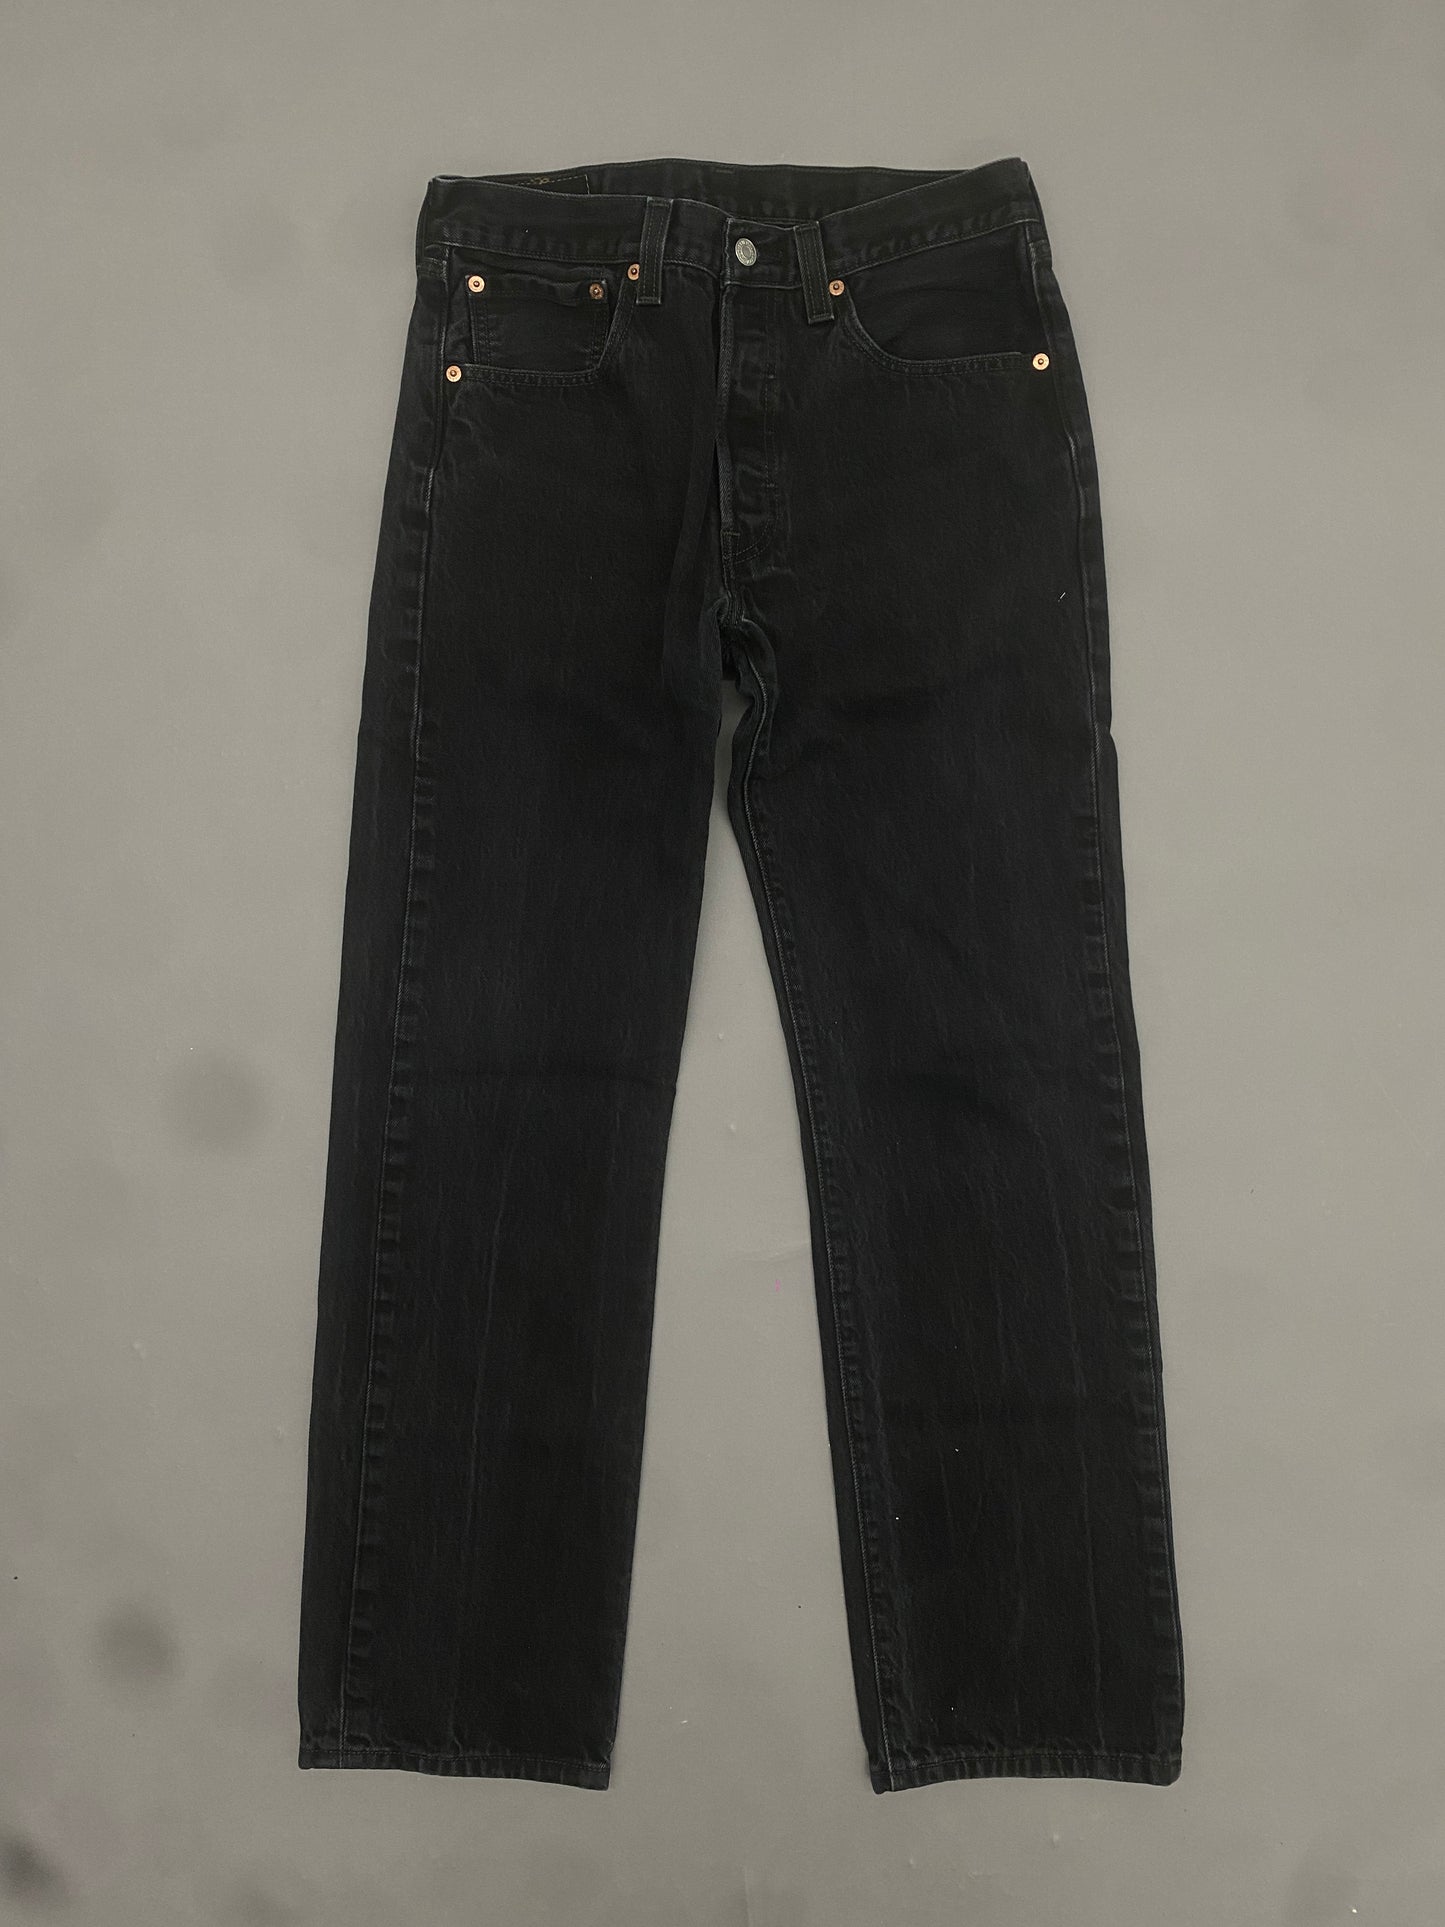 Levis 501 Vintage Jeans - 32x32